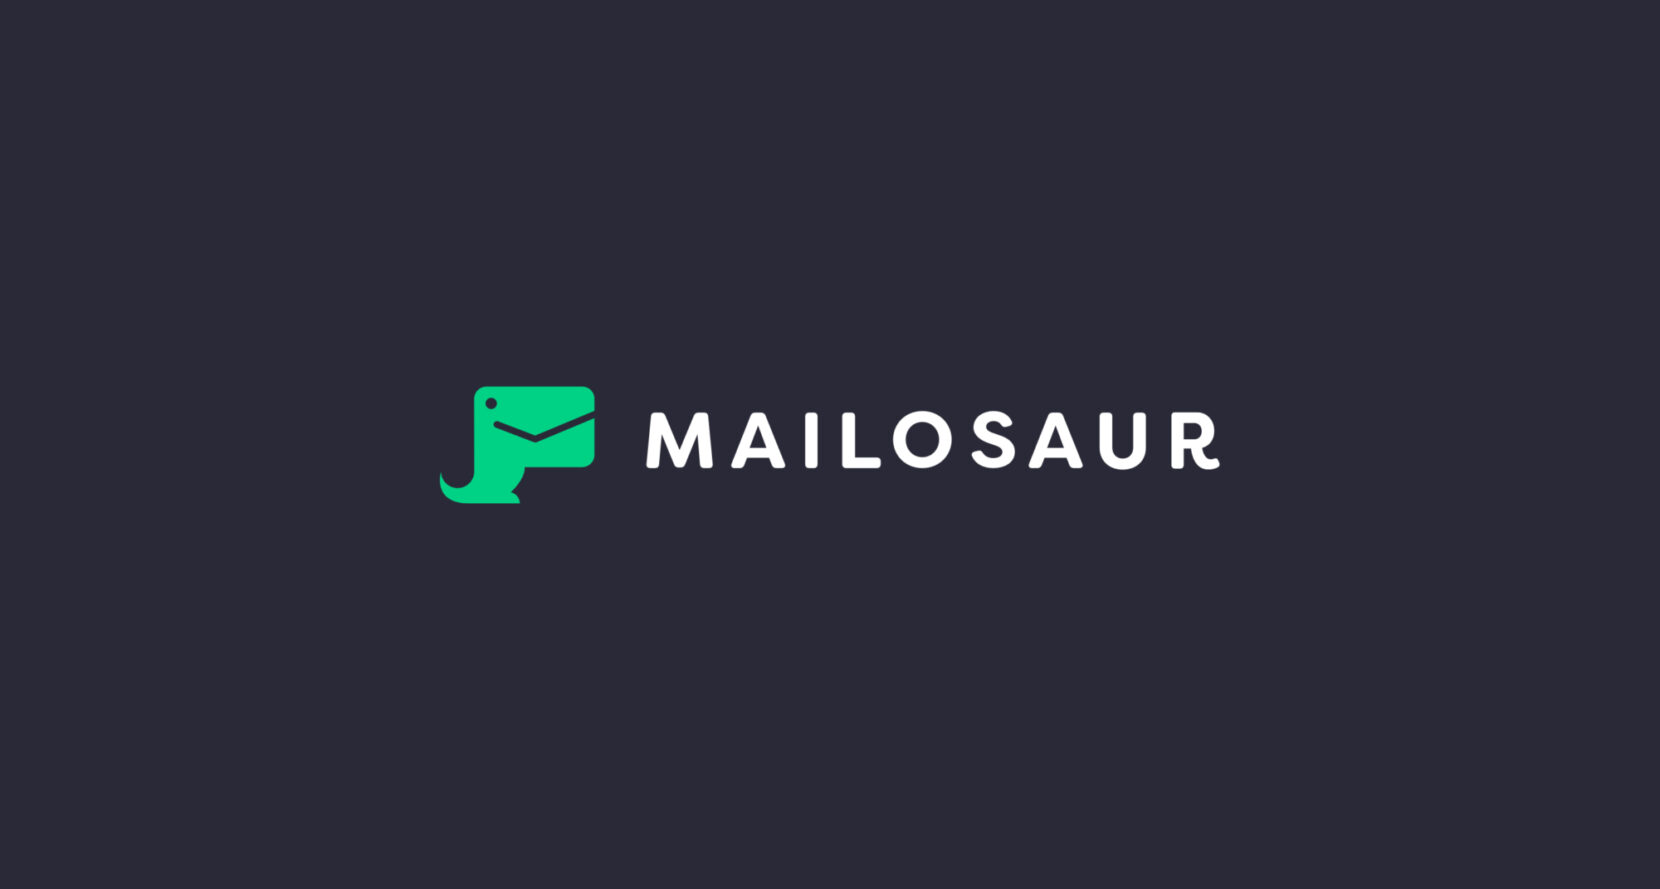 Mailosaur logo x2